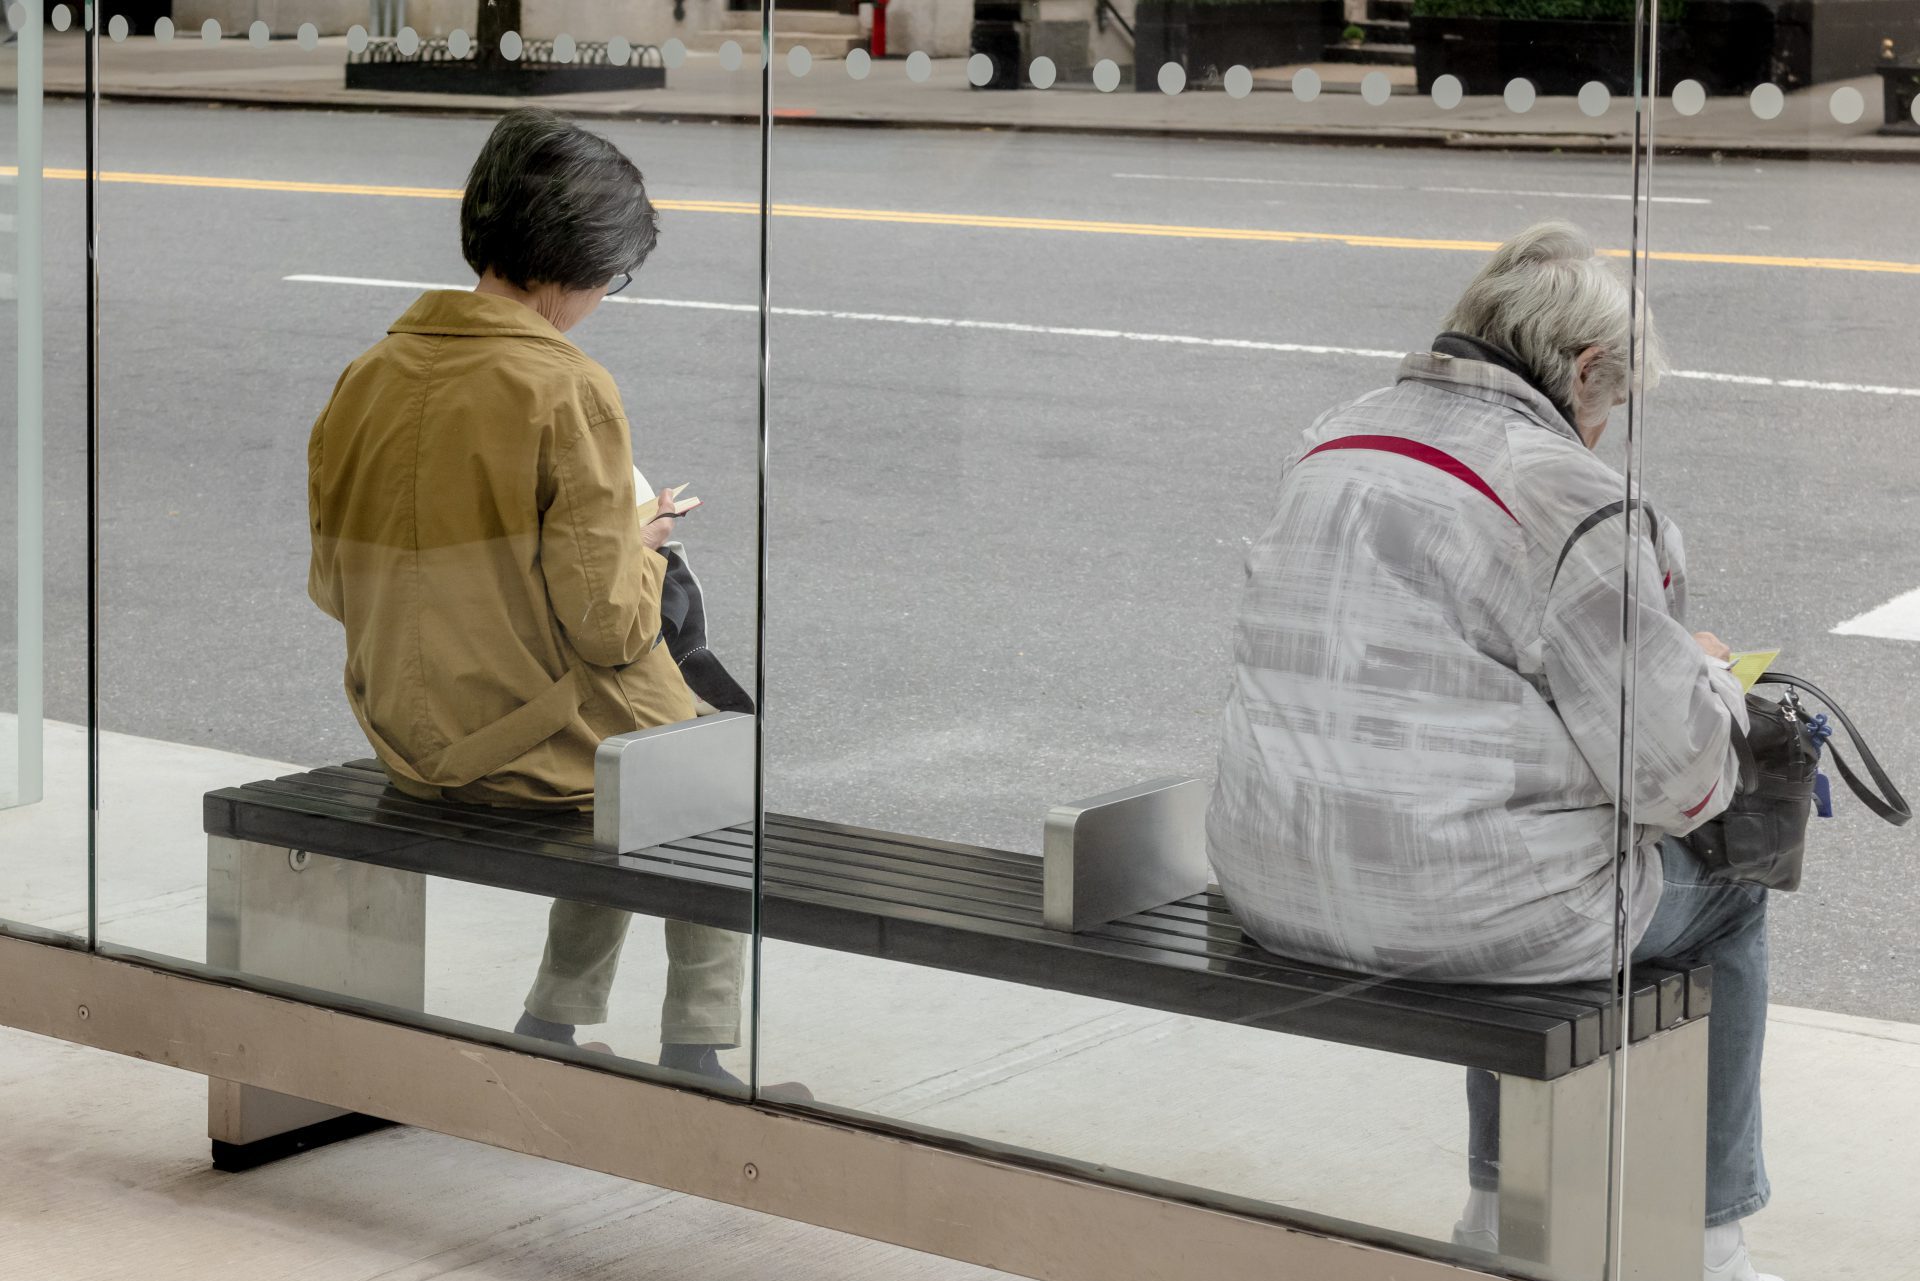 Zwei Frauen warten in einer Bushaltestelle